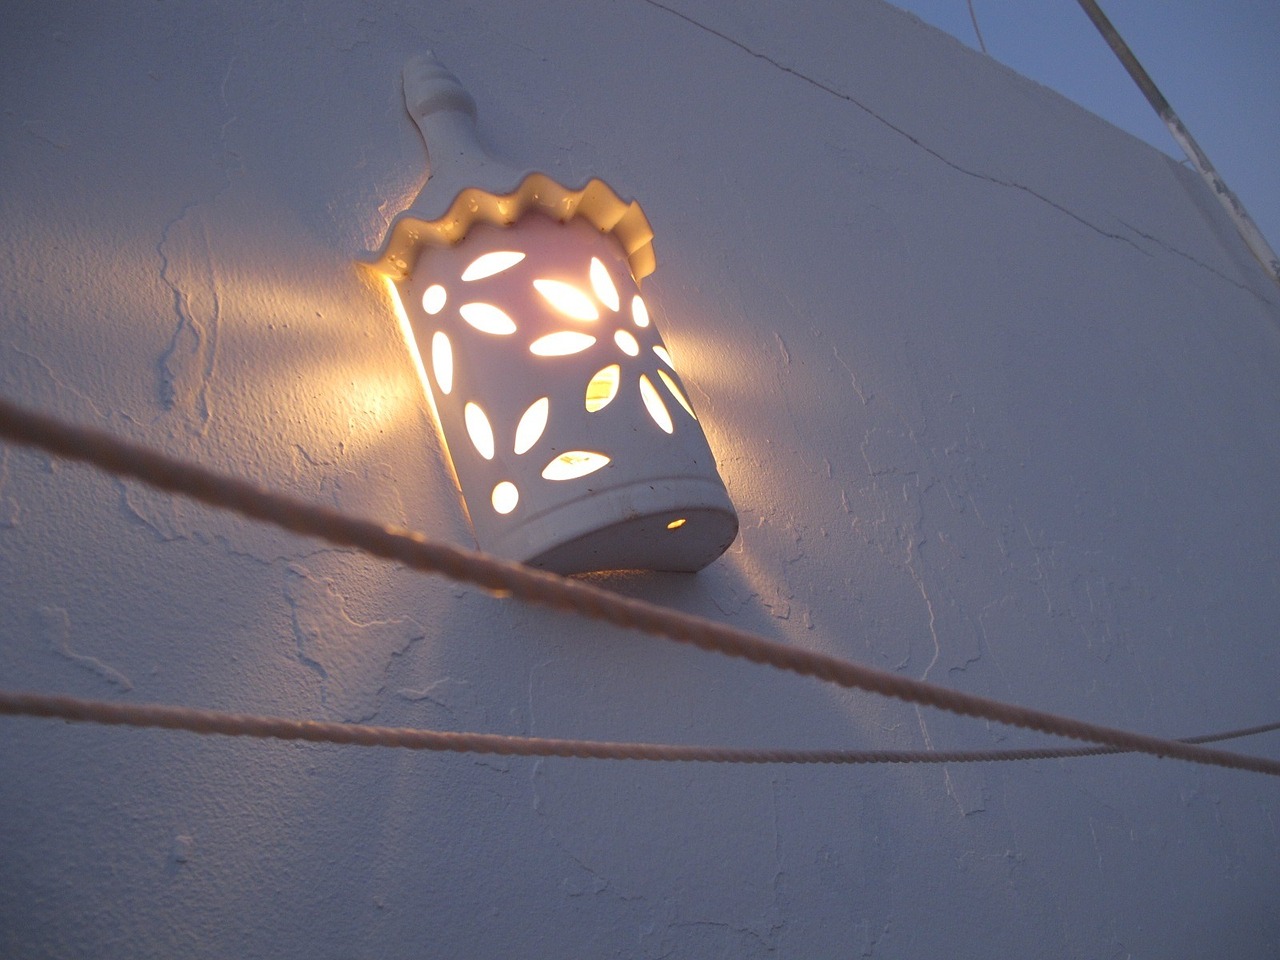 lamp-16986_1280.jpg